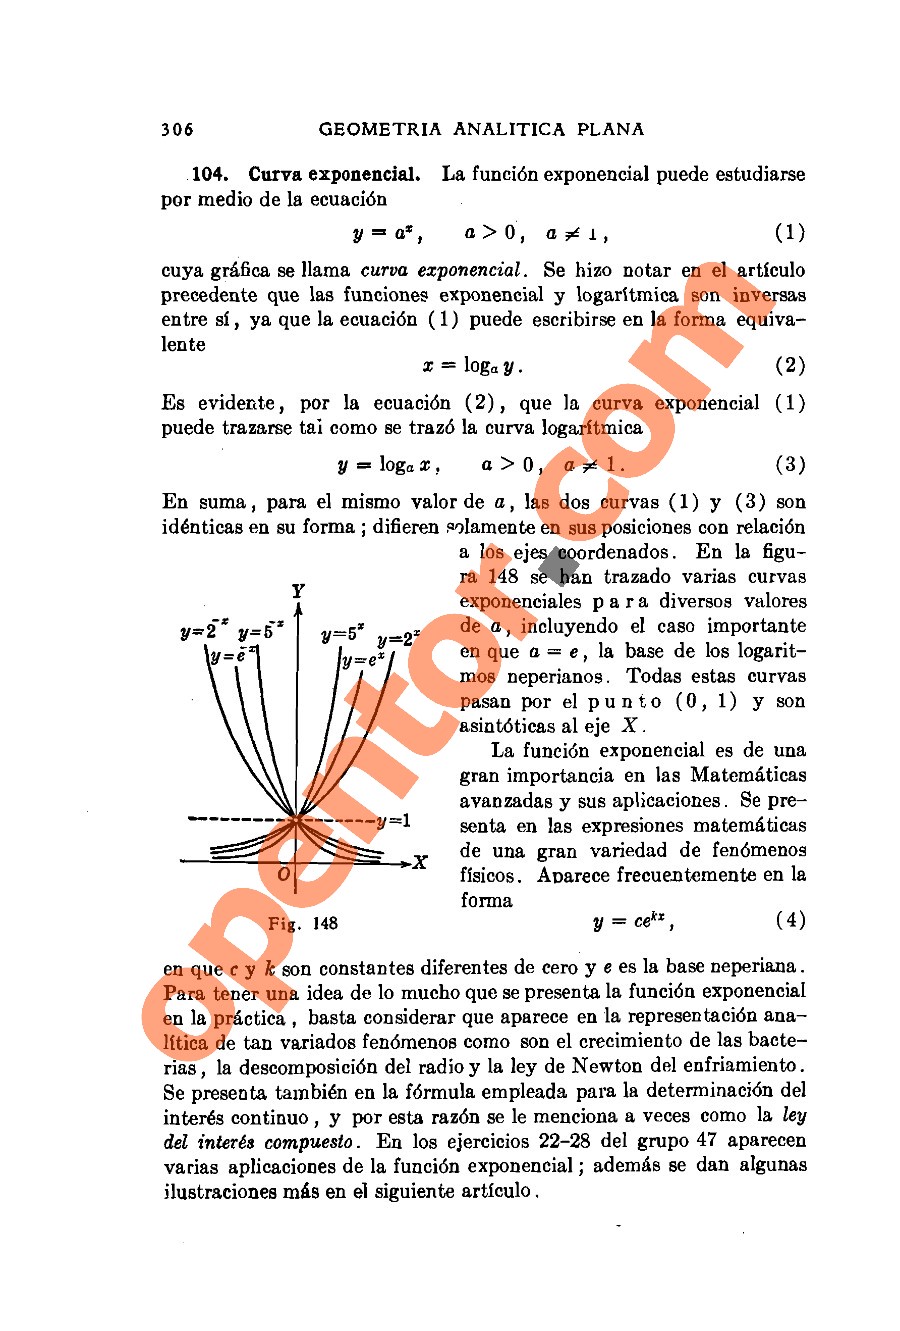 Geometría Analítica de Lehmann - Página 306